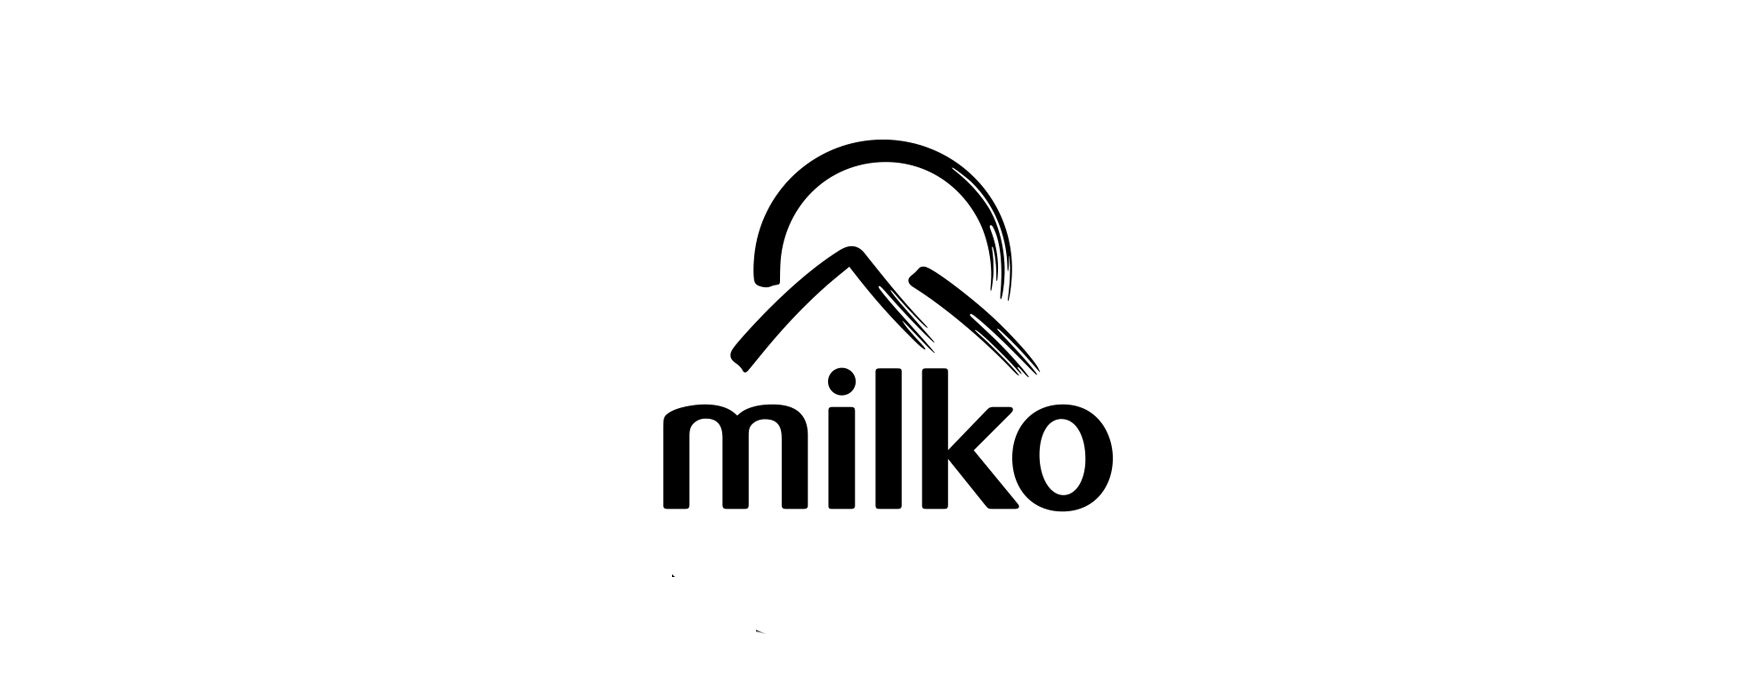 Milko Logo - Vidako › Milko